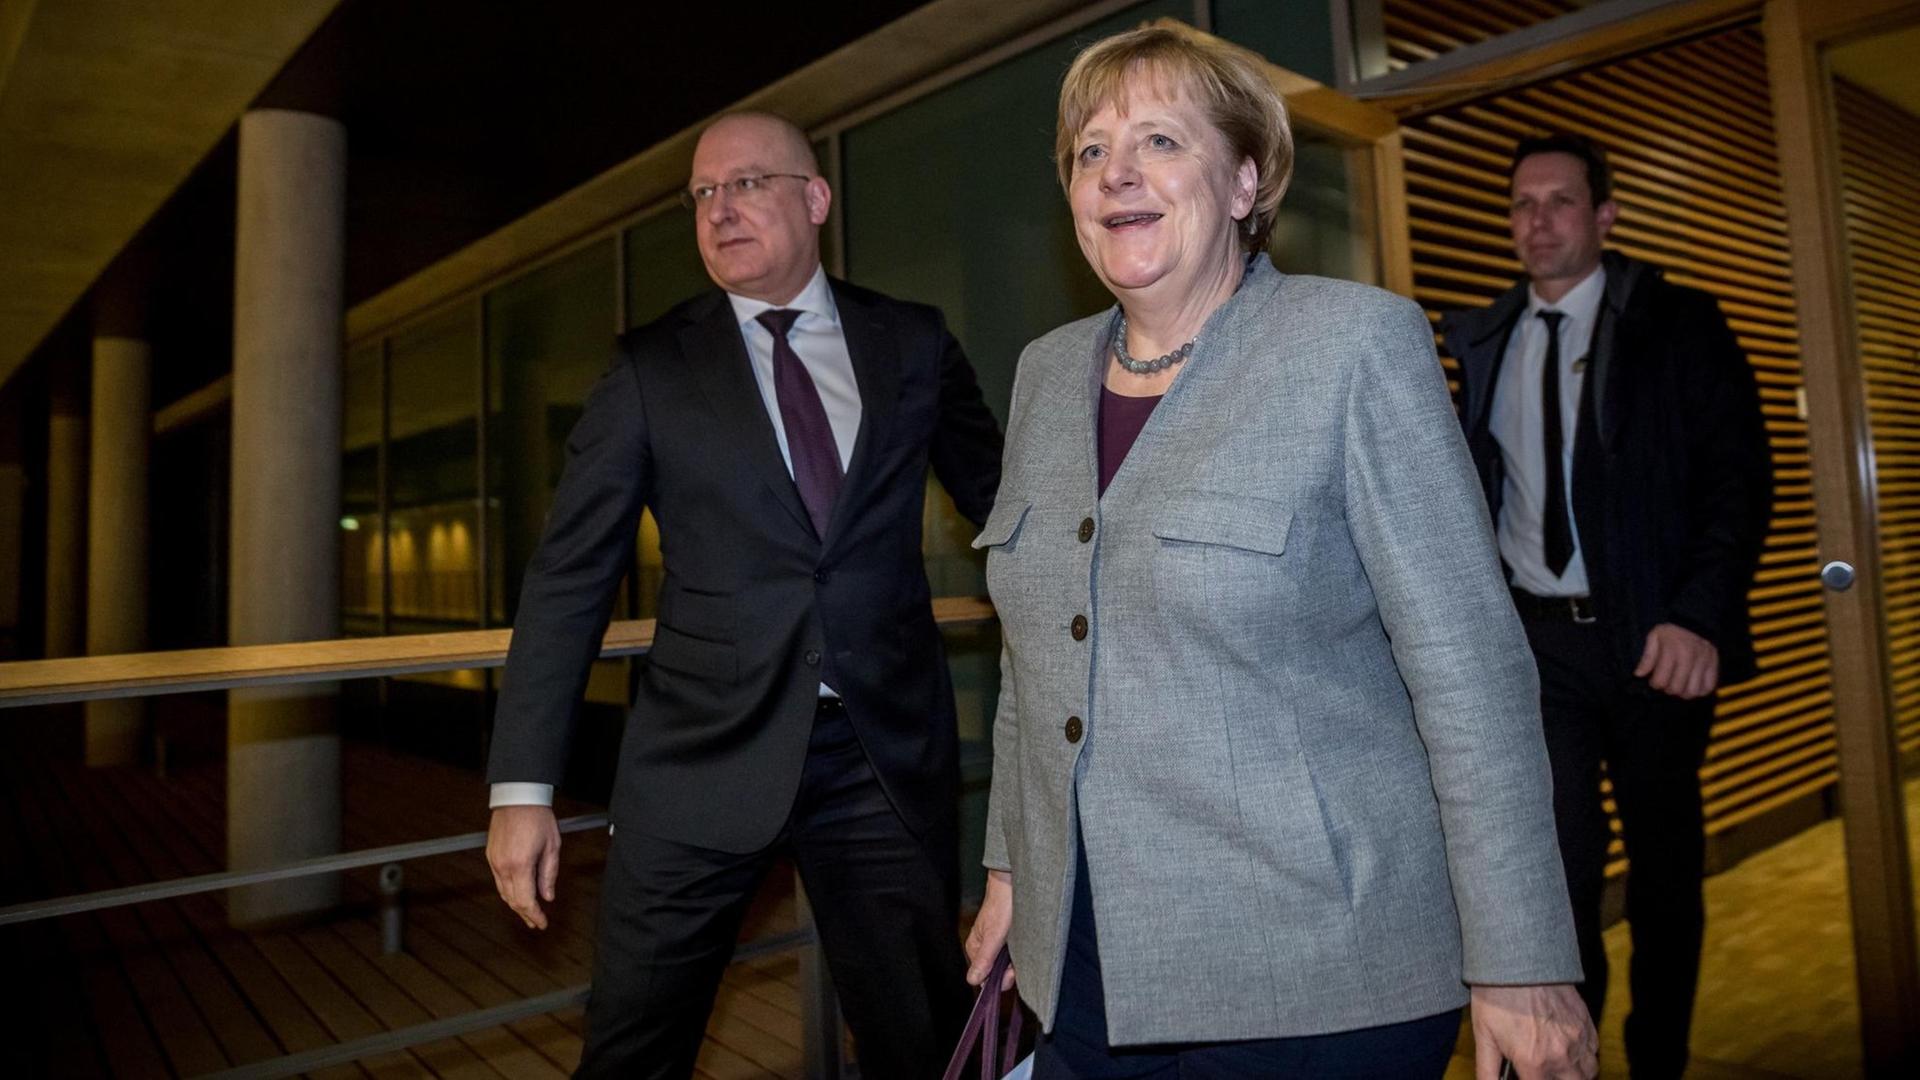 Bundeskanzlerin Angela Merkel (CDU) kommt am 13.12.2017 im Jakob-Kaiser-Haus im Bundestag in Berlin nach Vorgesprächen mit SPD und CSU aus den Räumen der CDU-Fraktion.